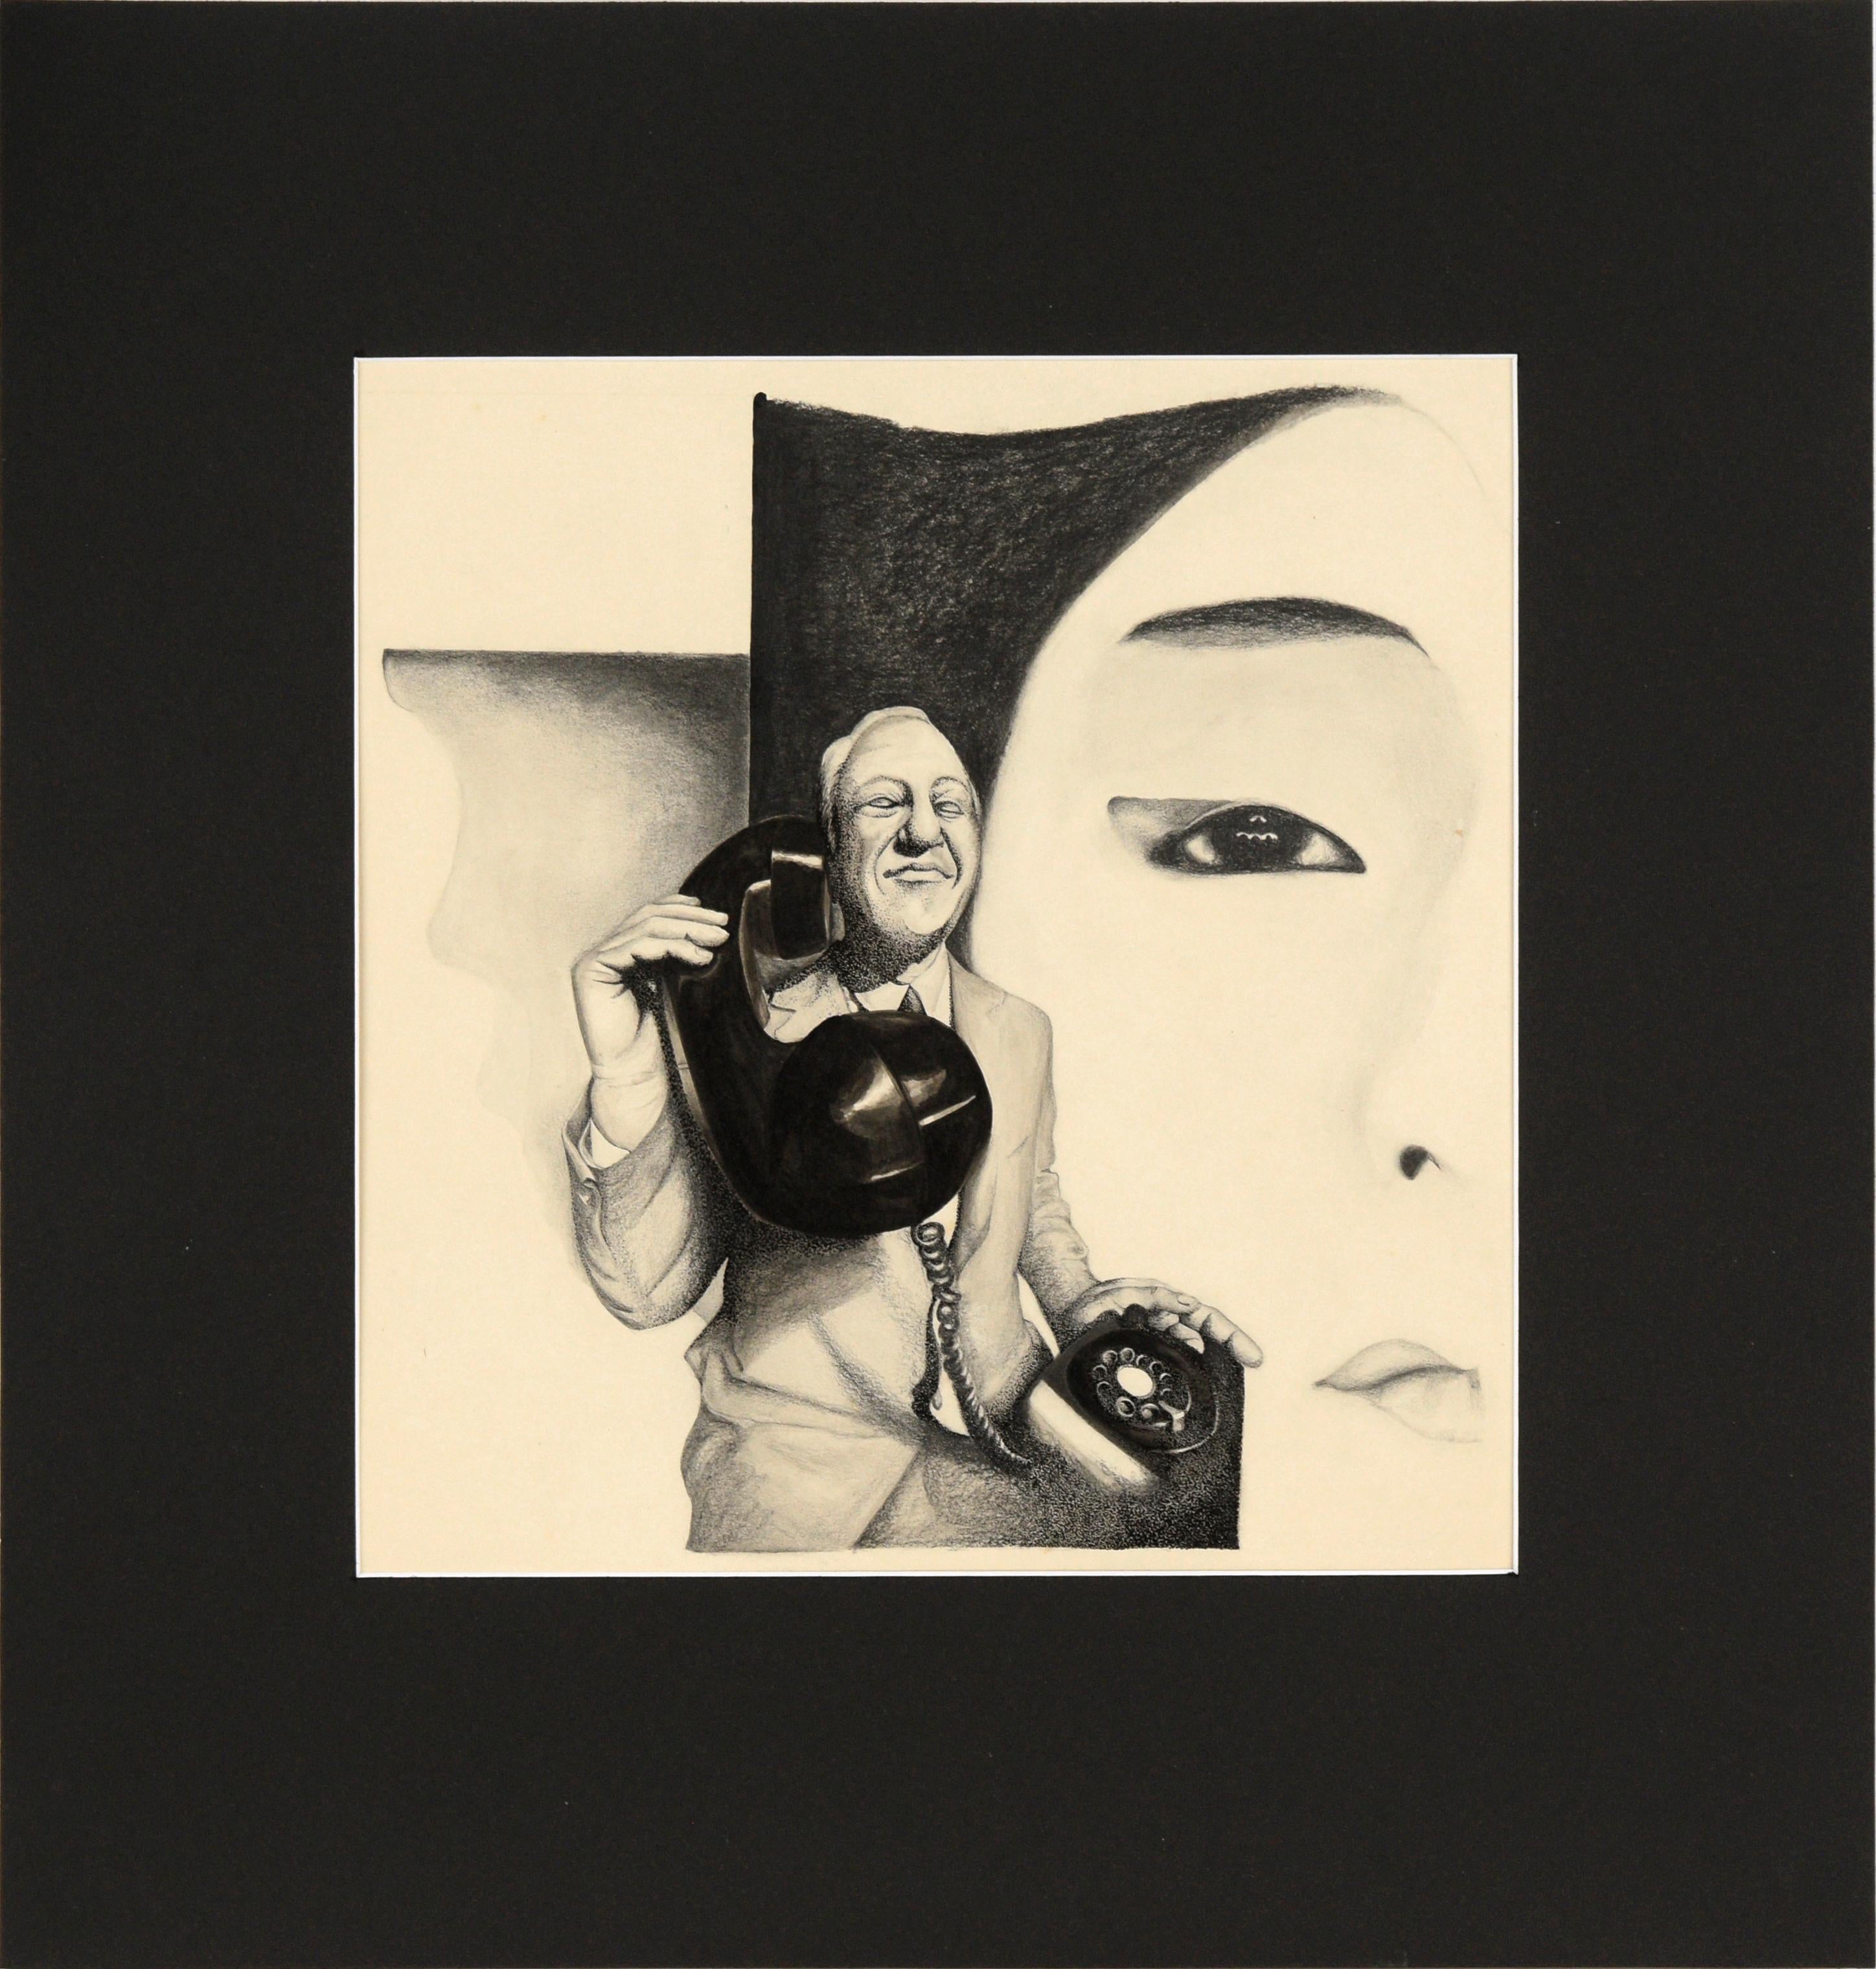 Hombre con teléfono - Retrato surrealista en blanco y negro en tinta sobre papel